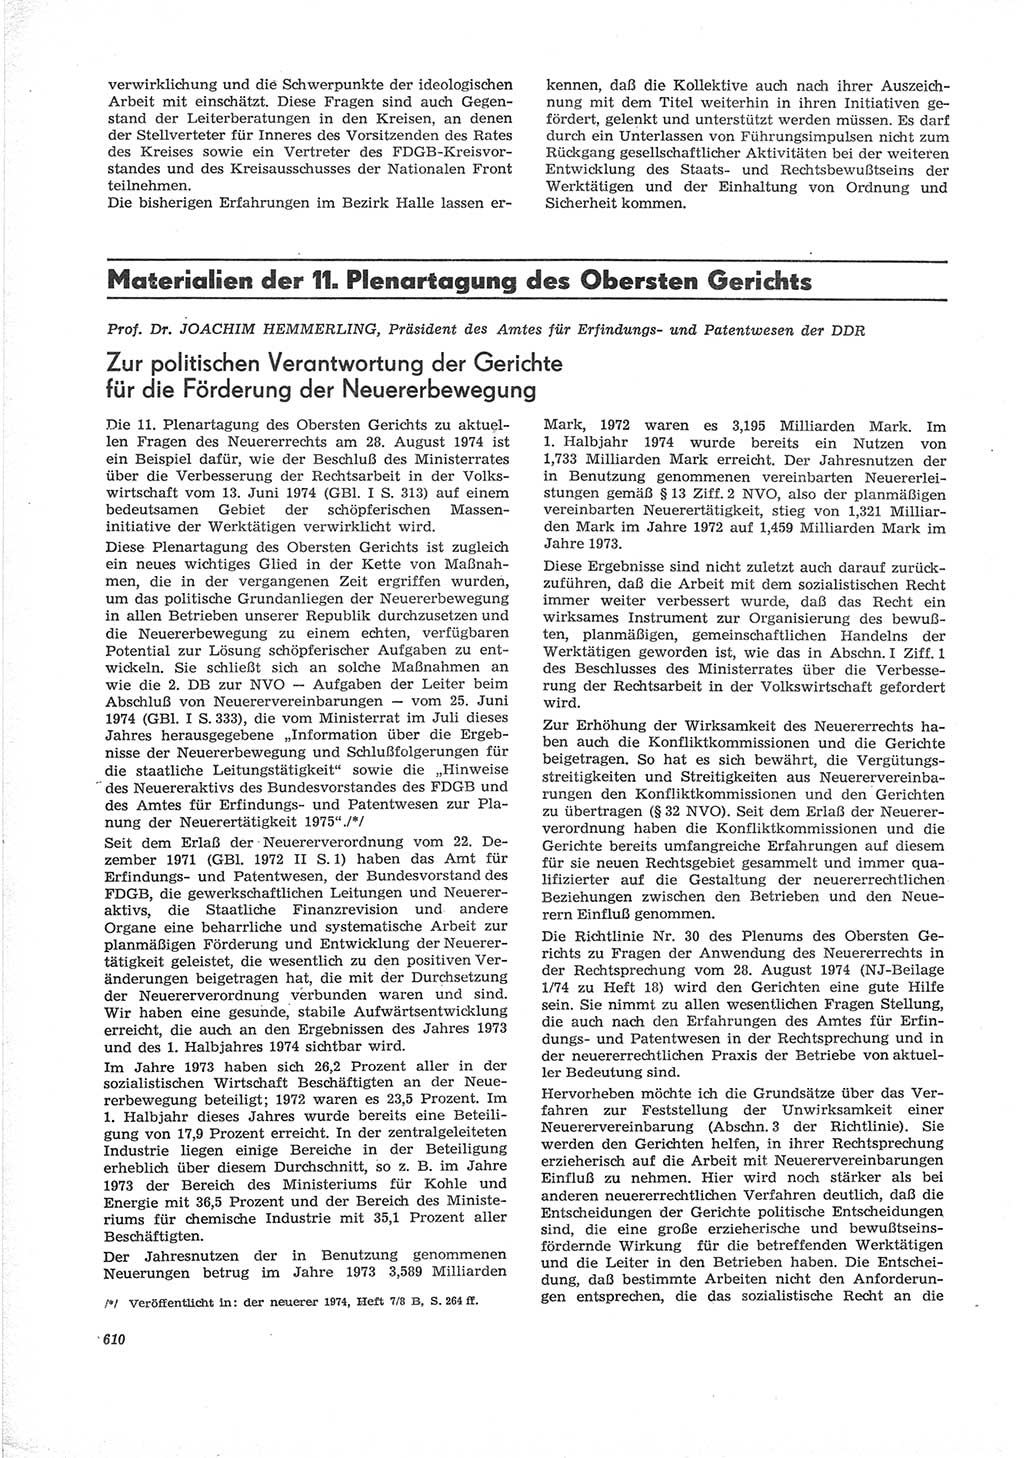 Neue Justiz (NJ), Zeitschrift für Recht und Rechtswissenschaft [Deutsche Demokratische Republik (DDR)], 28. Jahrgang 1974, Seite 610 (NJ DDR 1974, S. 610)